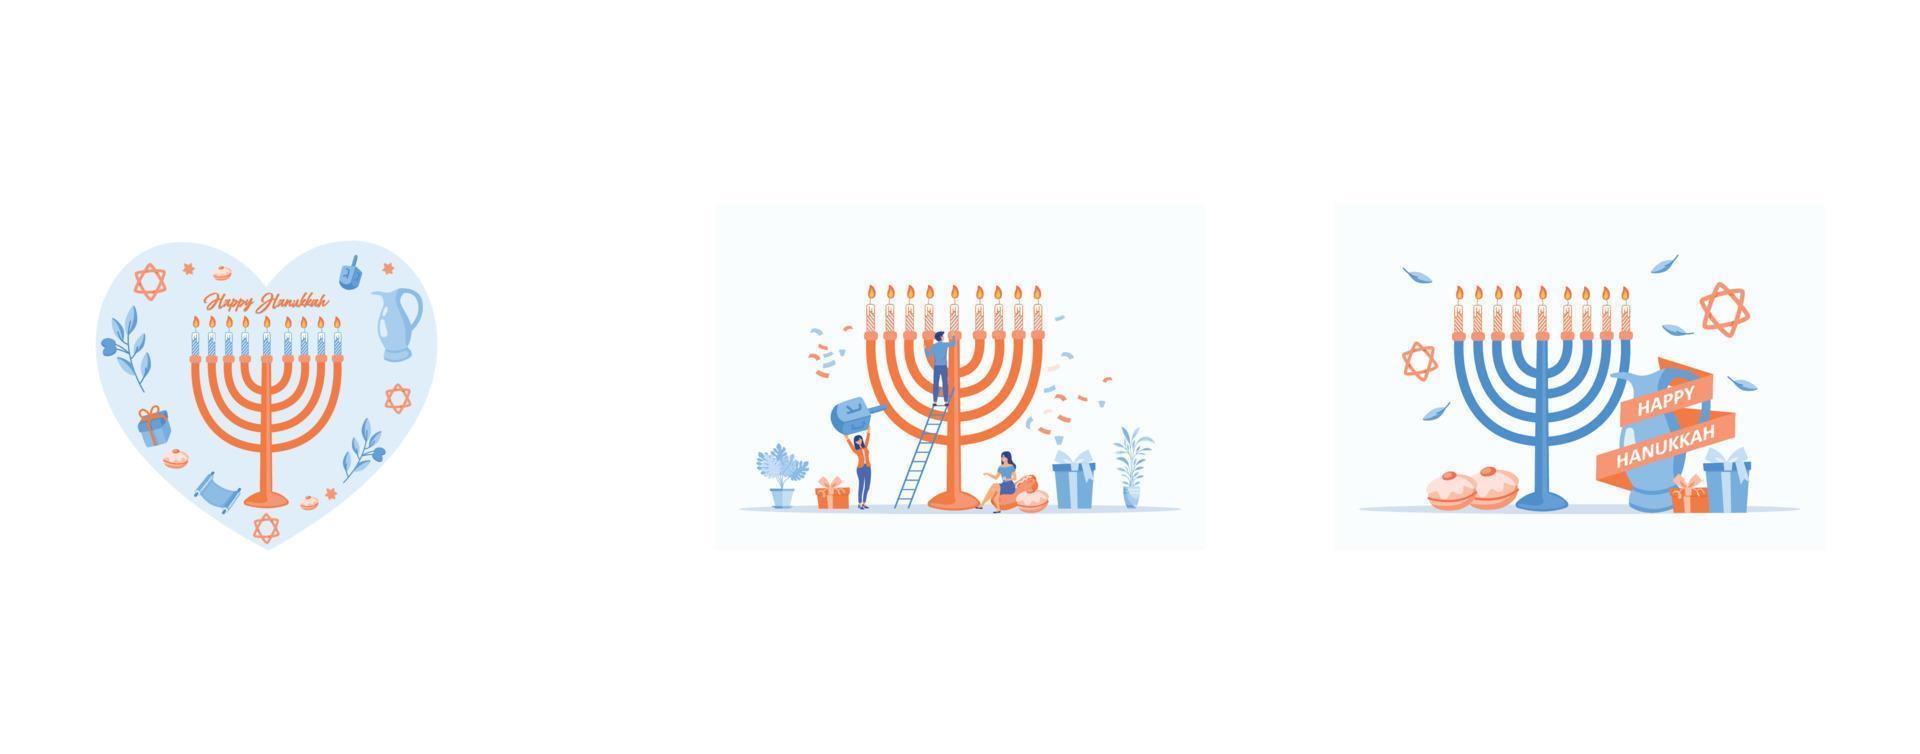 symbolen voor de Joods vakantie Chanoeka, concept van Chanoeka vakantie menora decoratie met gelukkig klein mensen karakter, hand- geschetst gelukkig Chanoeka logo, reeks vlak vector modern illustratie